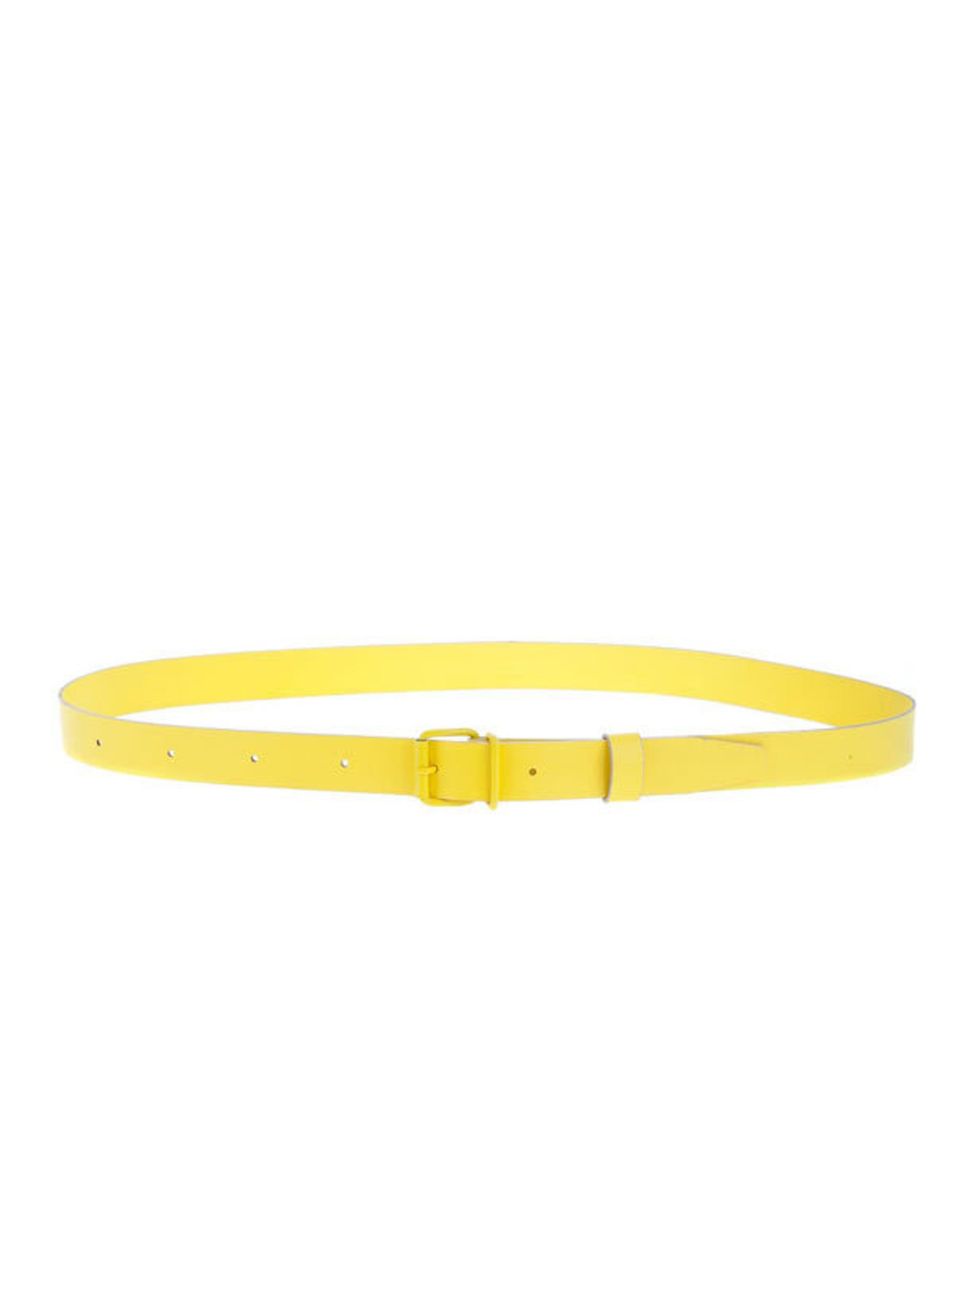 <p>Cacharel skinny belt, £75, at <a href="http://www.farfetch.com/shopping/women/cacharel/item10080174.aspx">farfetch.com</a></p>